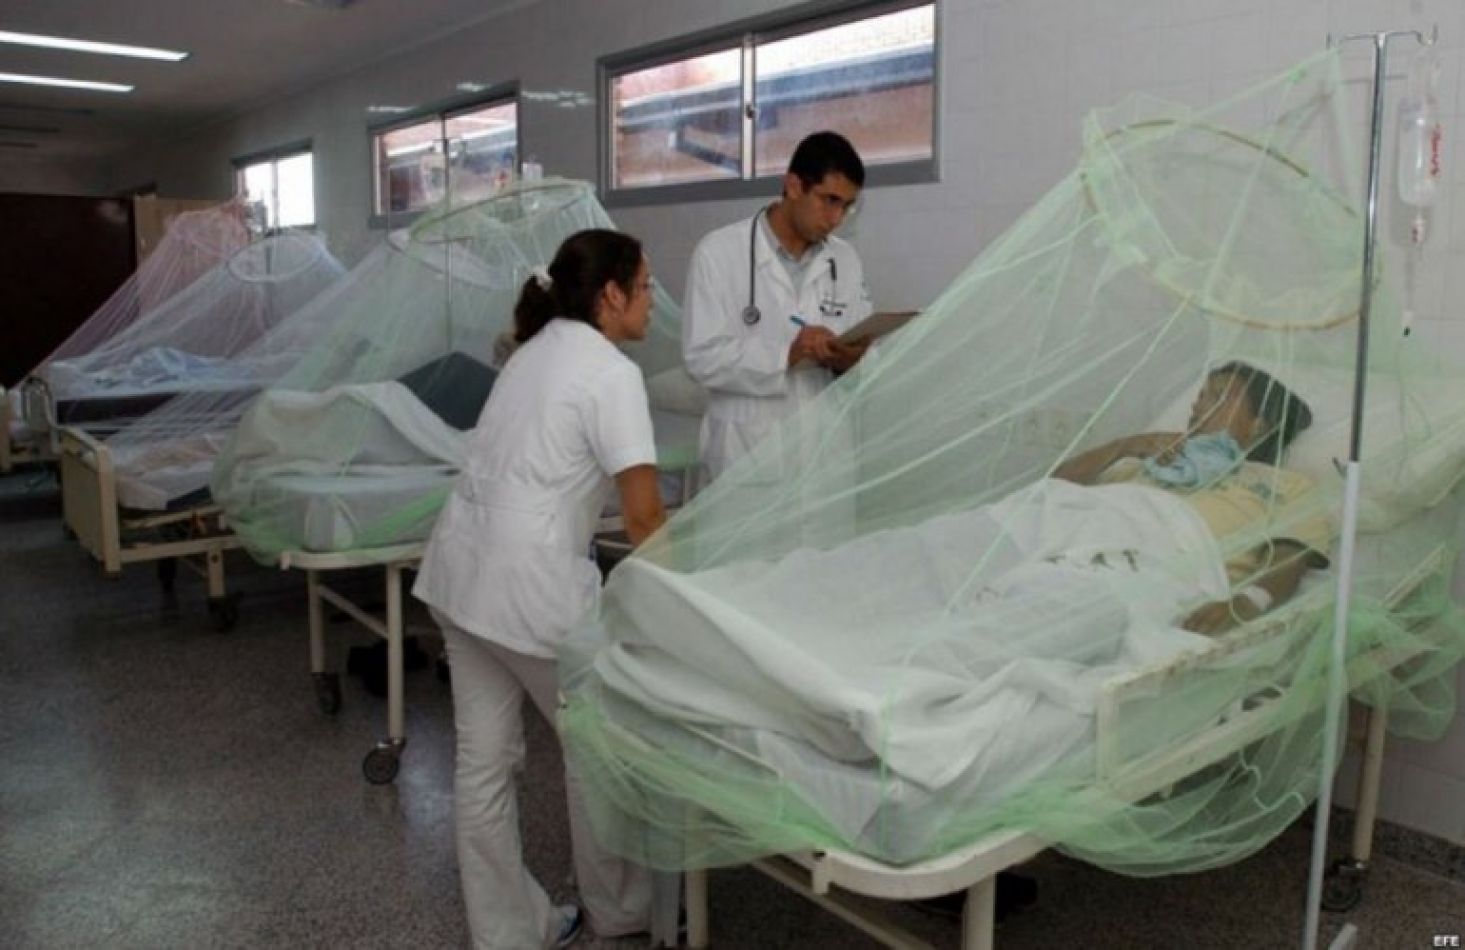 "Mi hija sangra por la piel": el estremecedor caso de dengue hemorrágico en Salta